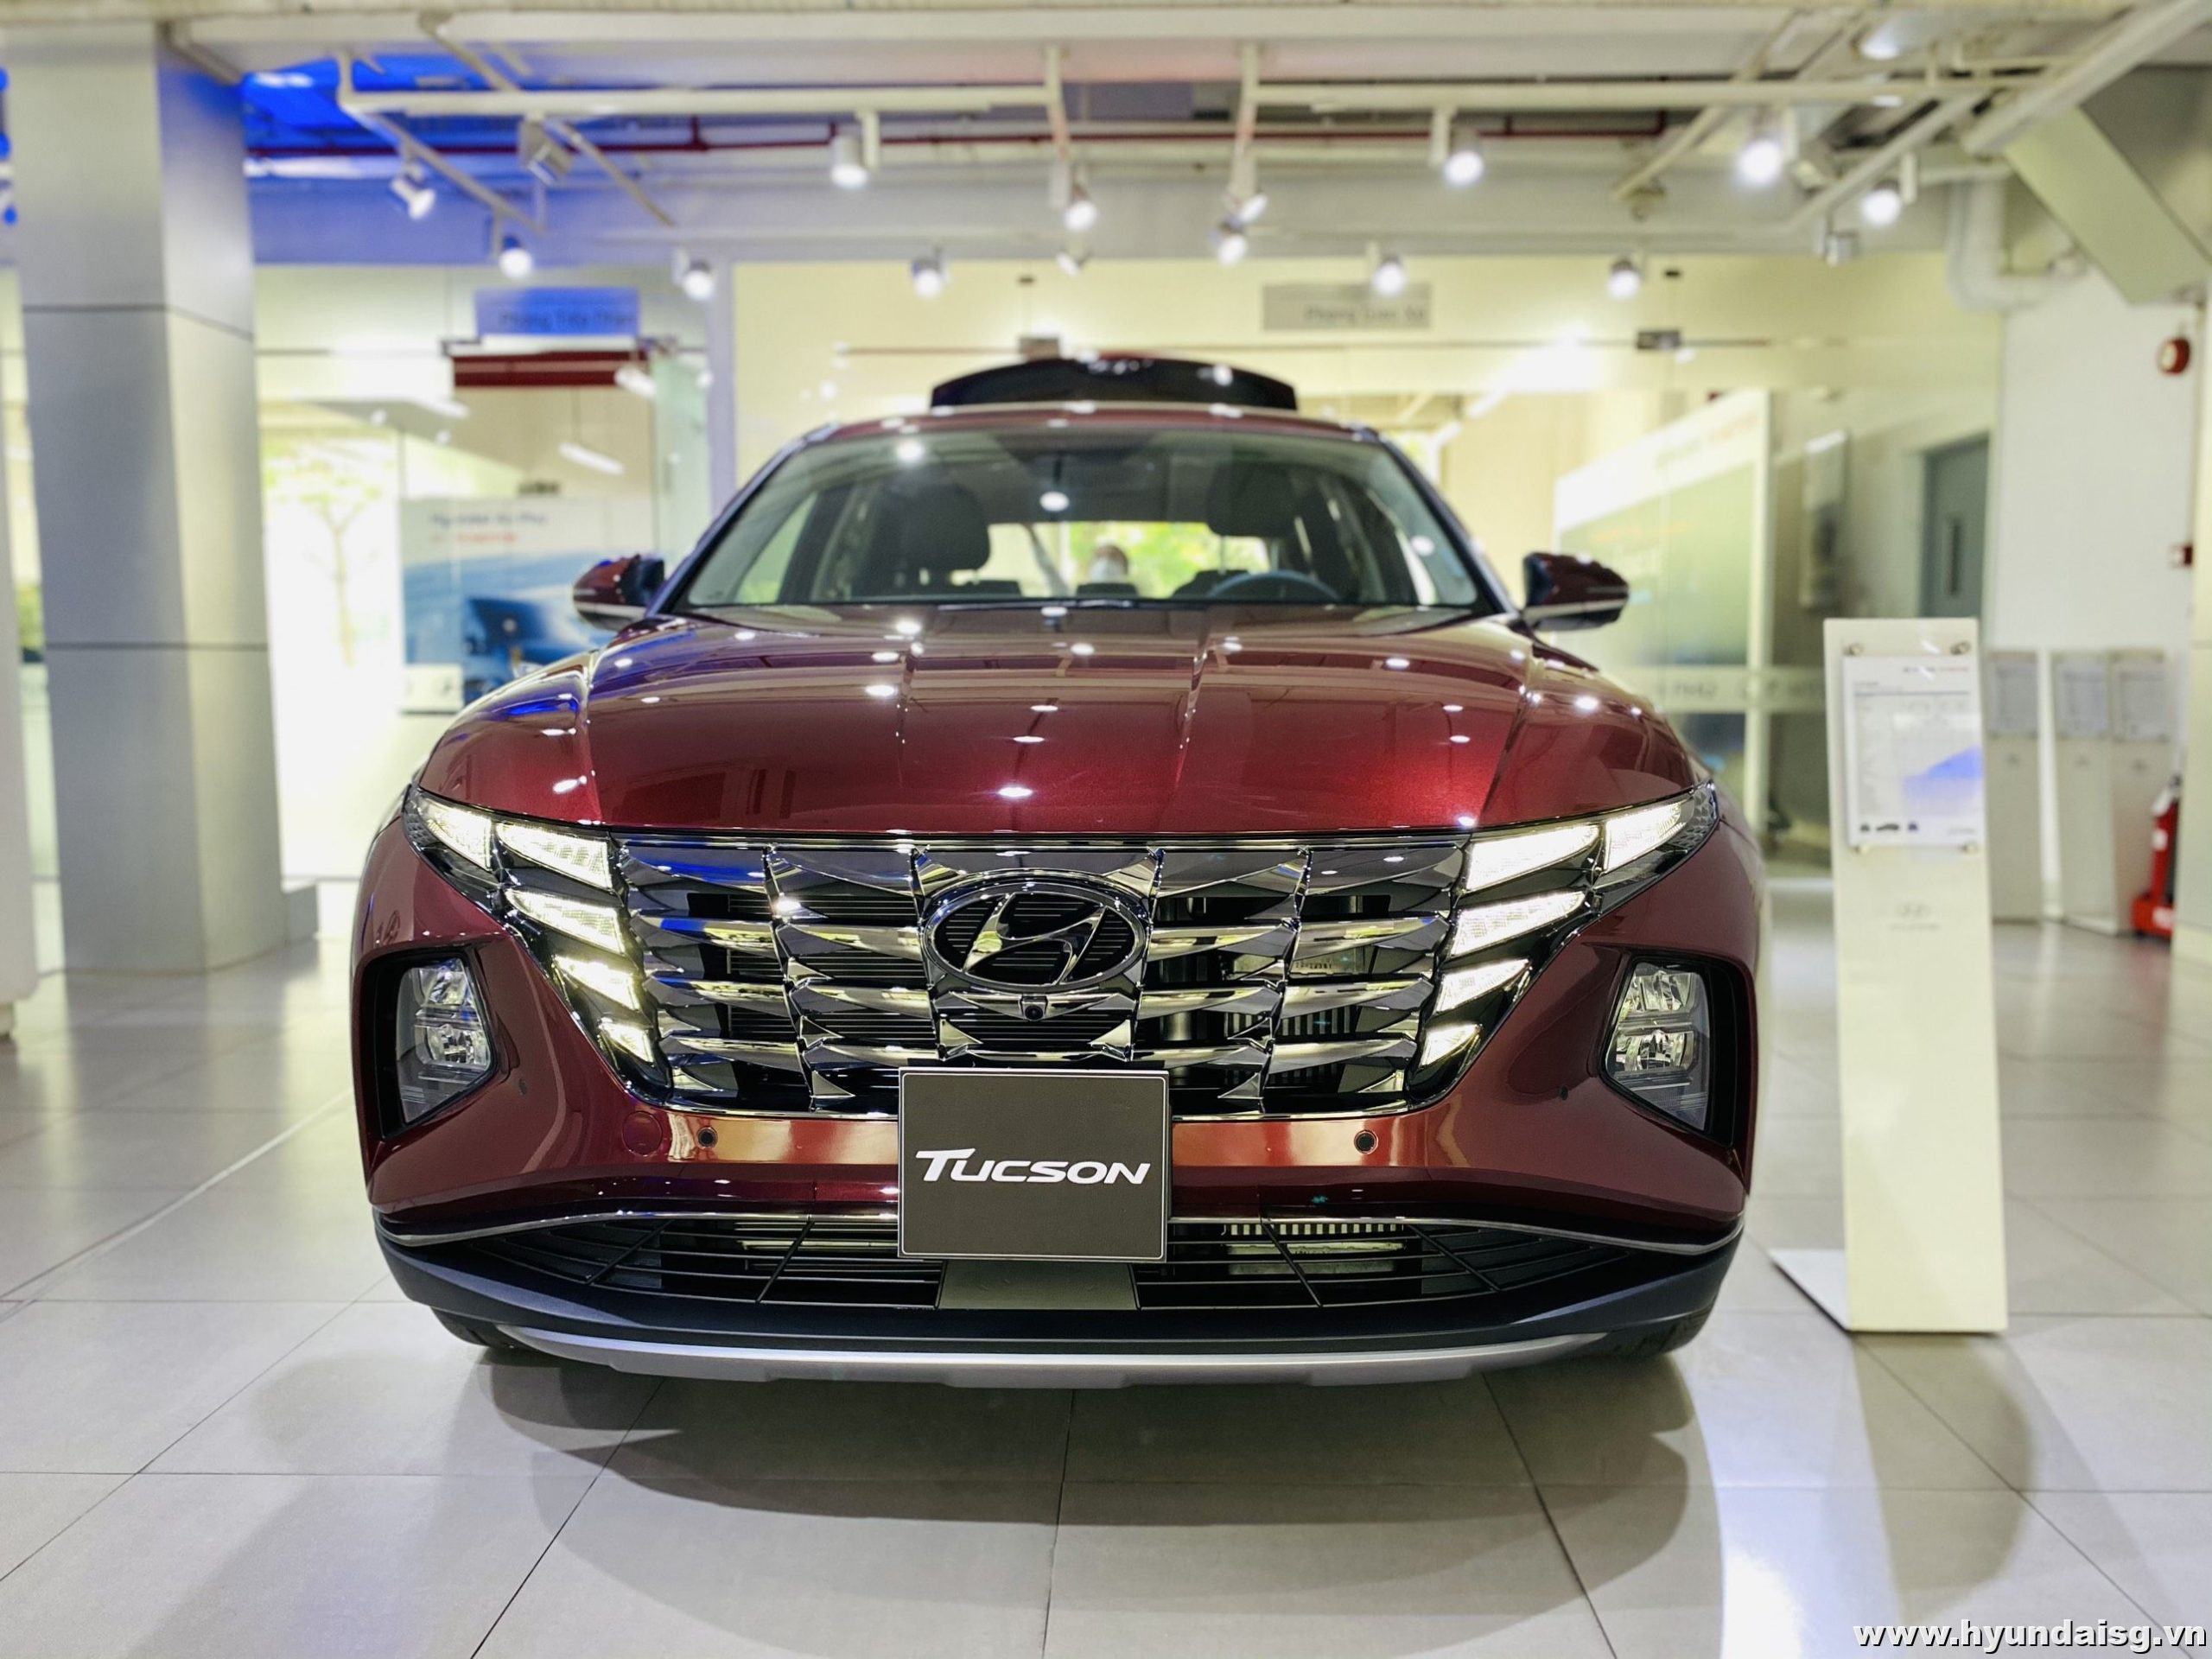 Read more about the article Bảng giá và chương trình khuyến mãi xe Hyundai tháng 9/2022